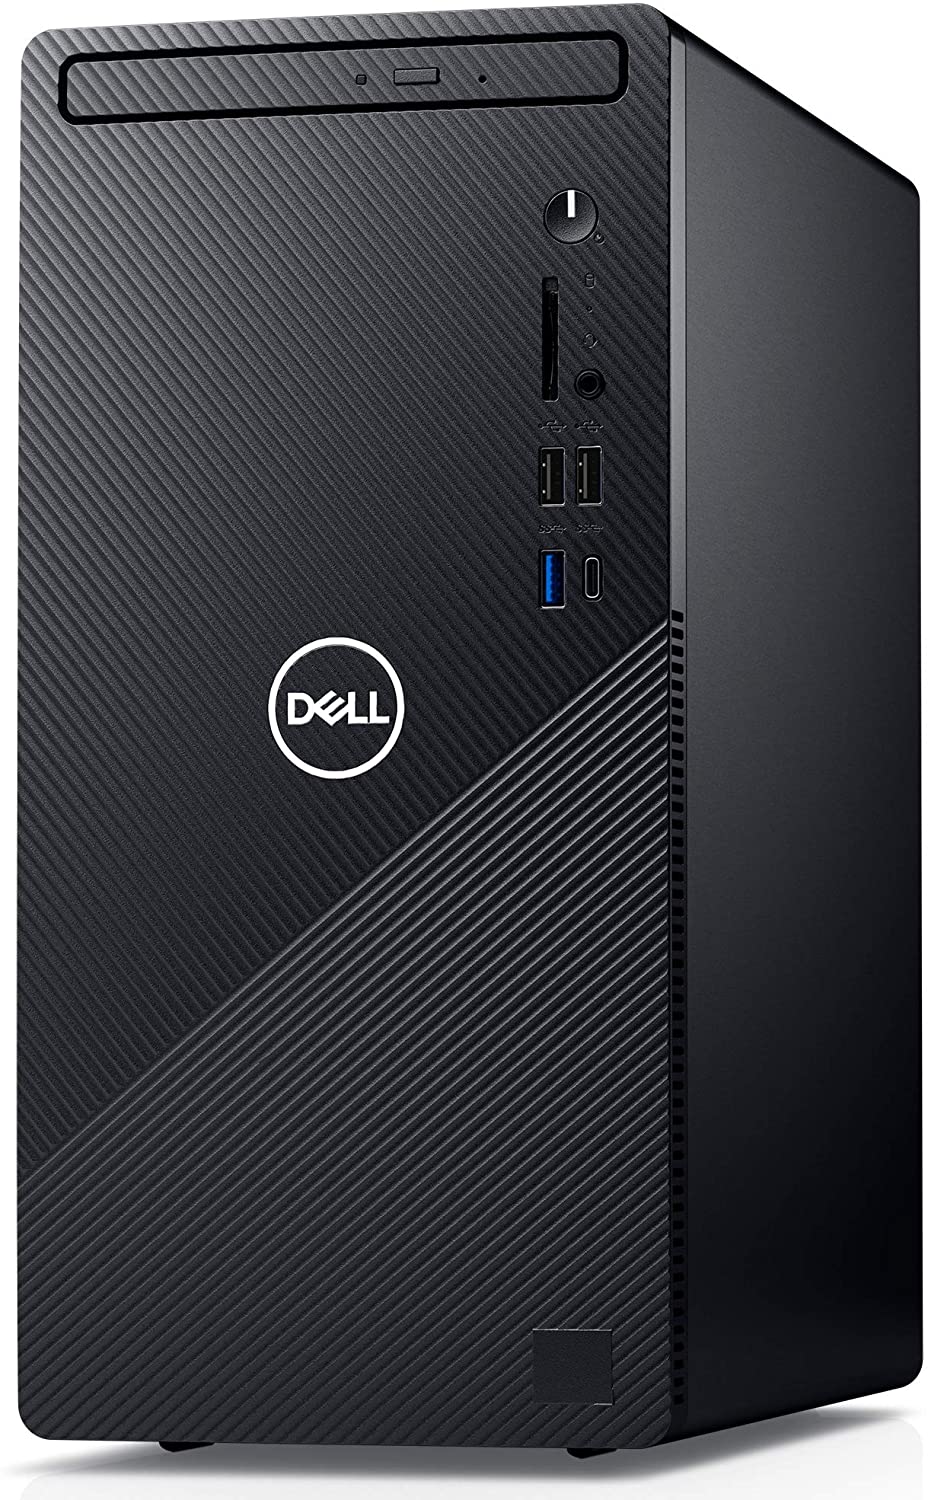 Sistem Brand Dell Inspiron 3881 Intel Core i5-10400F RAM 8GB HDD 1TB + SSD 256GB Windows 10 Pro